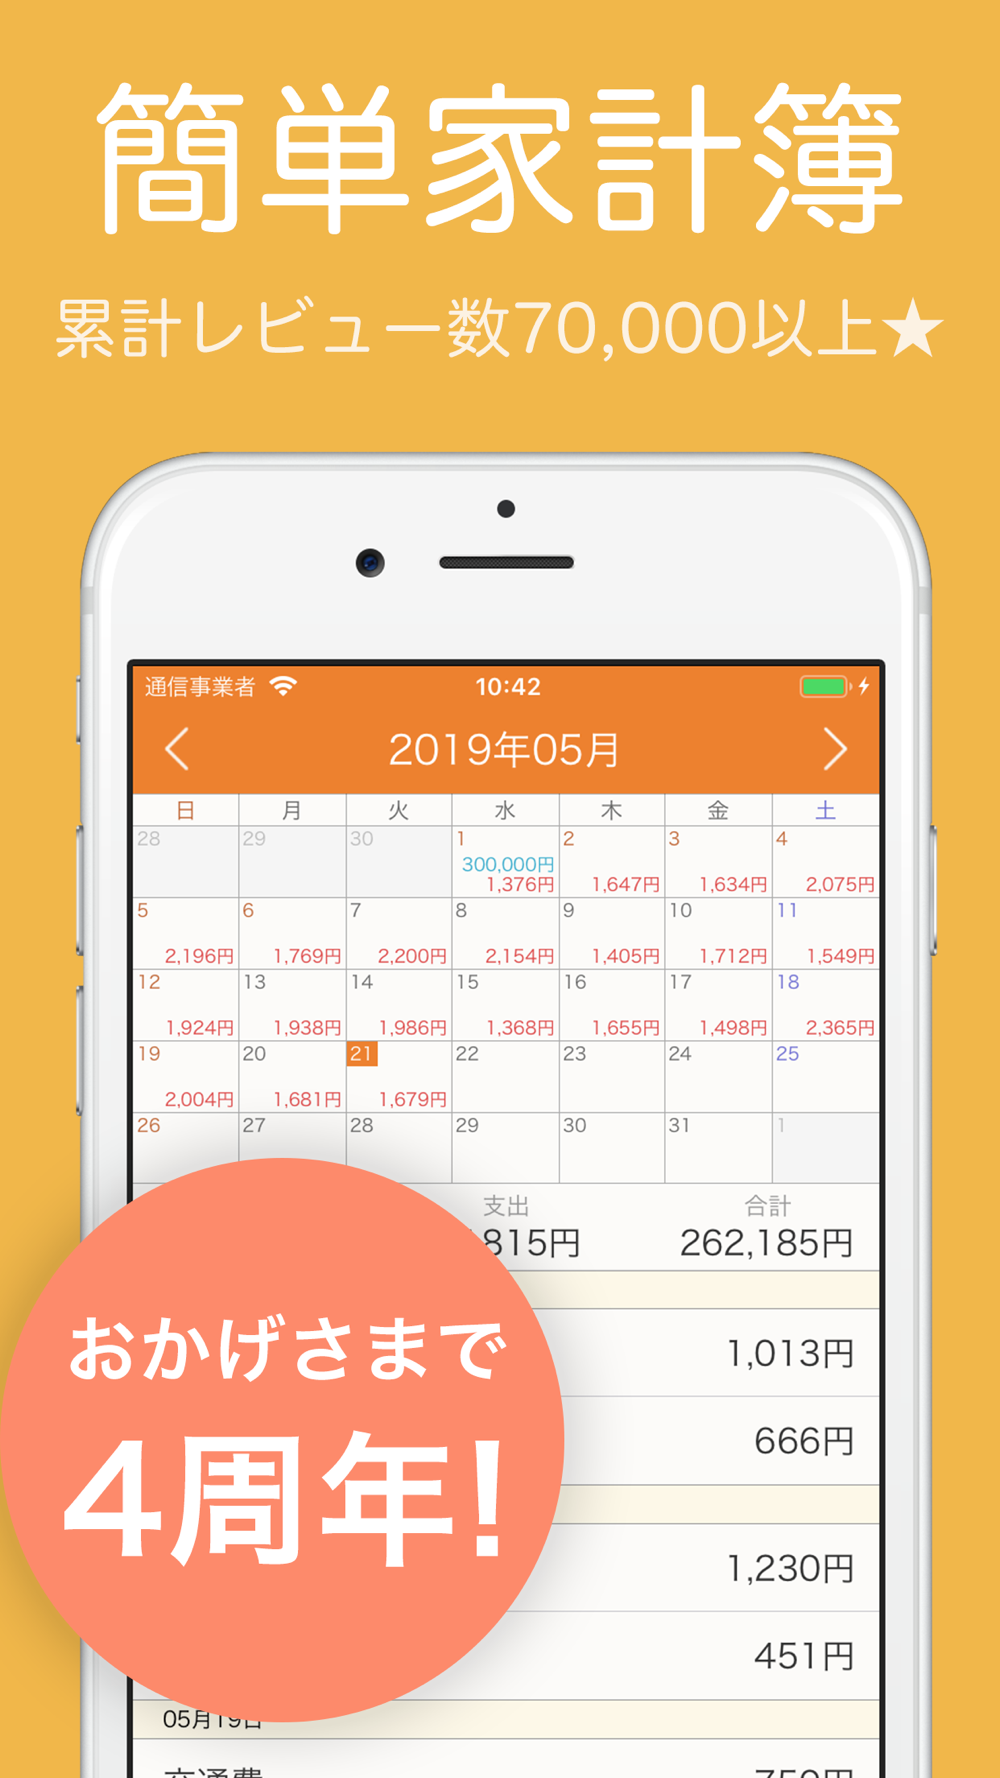 家計簿 簡単お小遣い帳 人気の家計簿かけいぼ Free Download App For Iphone Steprimo Com